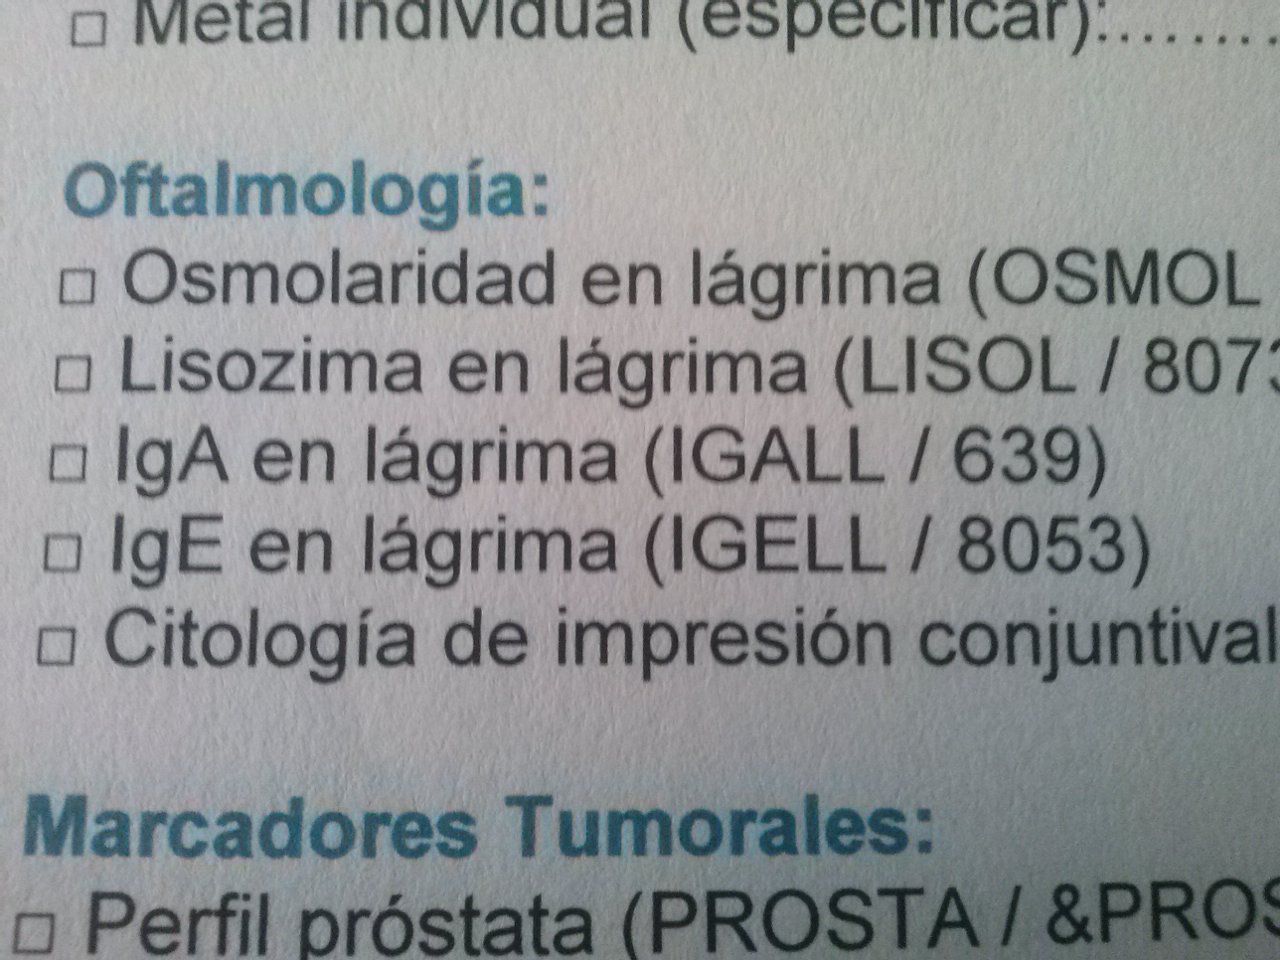 Oftalmología.